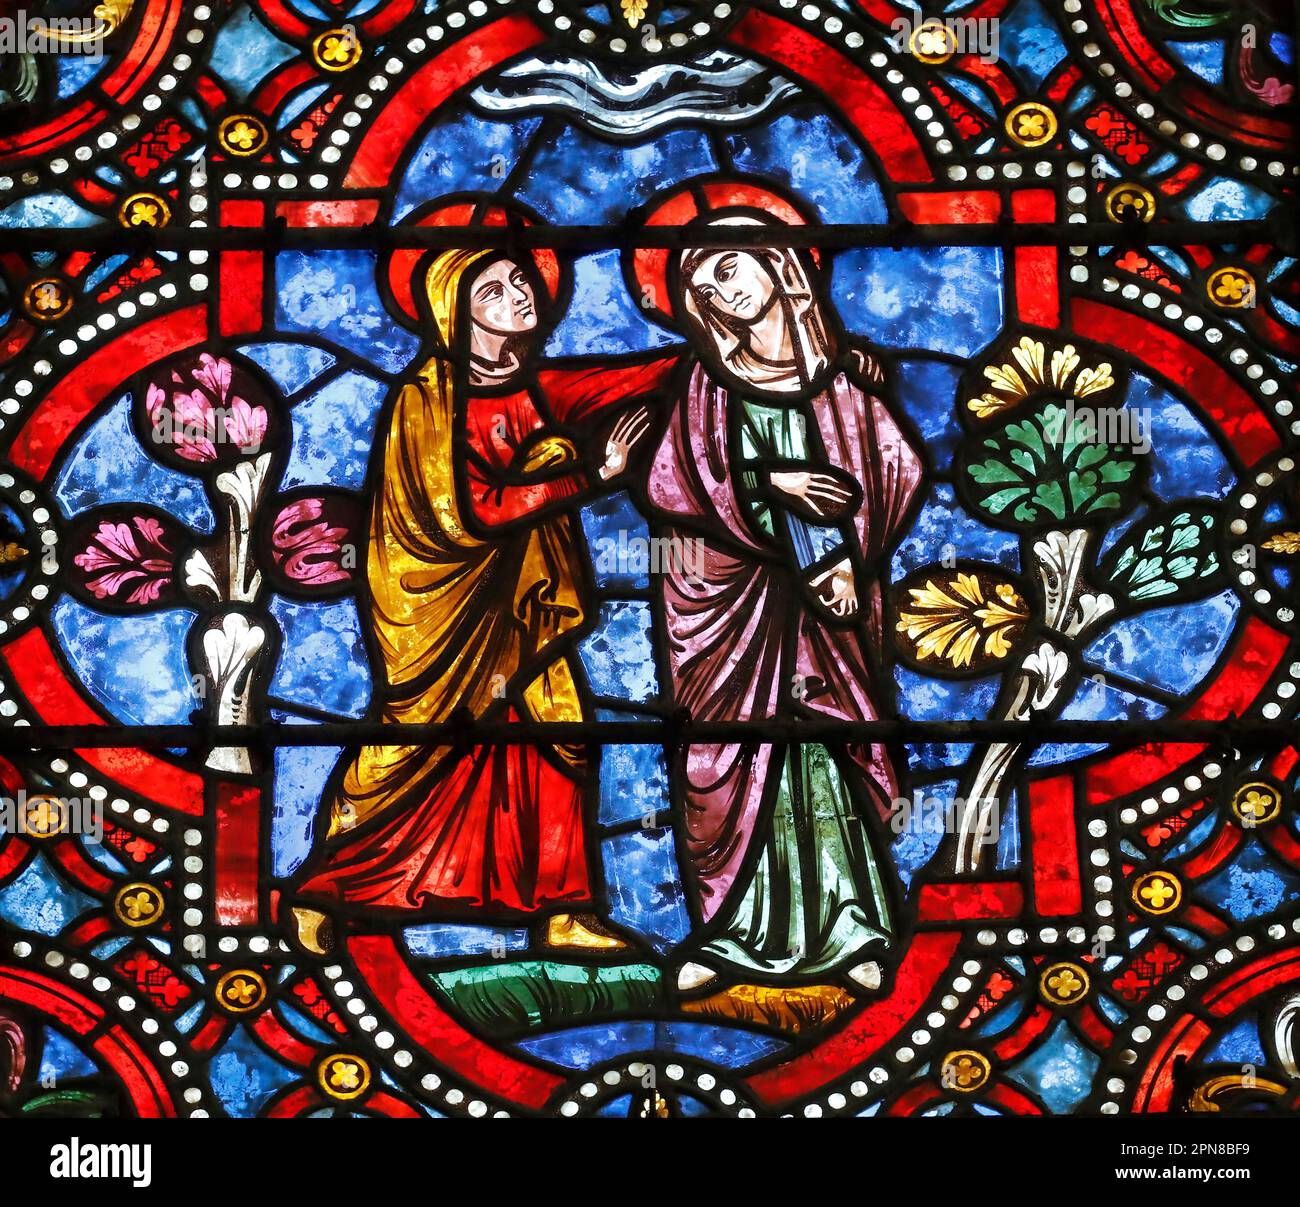 Cattedrale di Auxerre. Vetro colorato. La Visitazione della Beata Vergine Maria è la visita di Maria con Elisabetta, come riportato nel Vangelo di Luca. A. Foto Stock